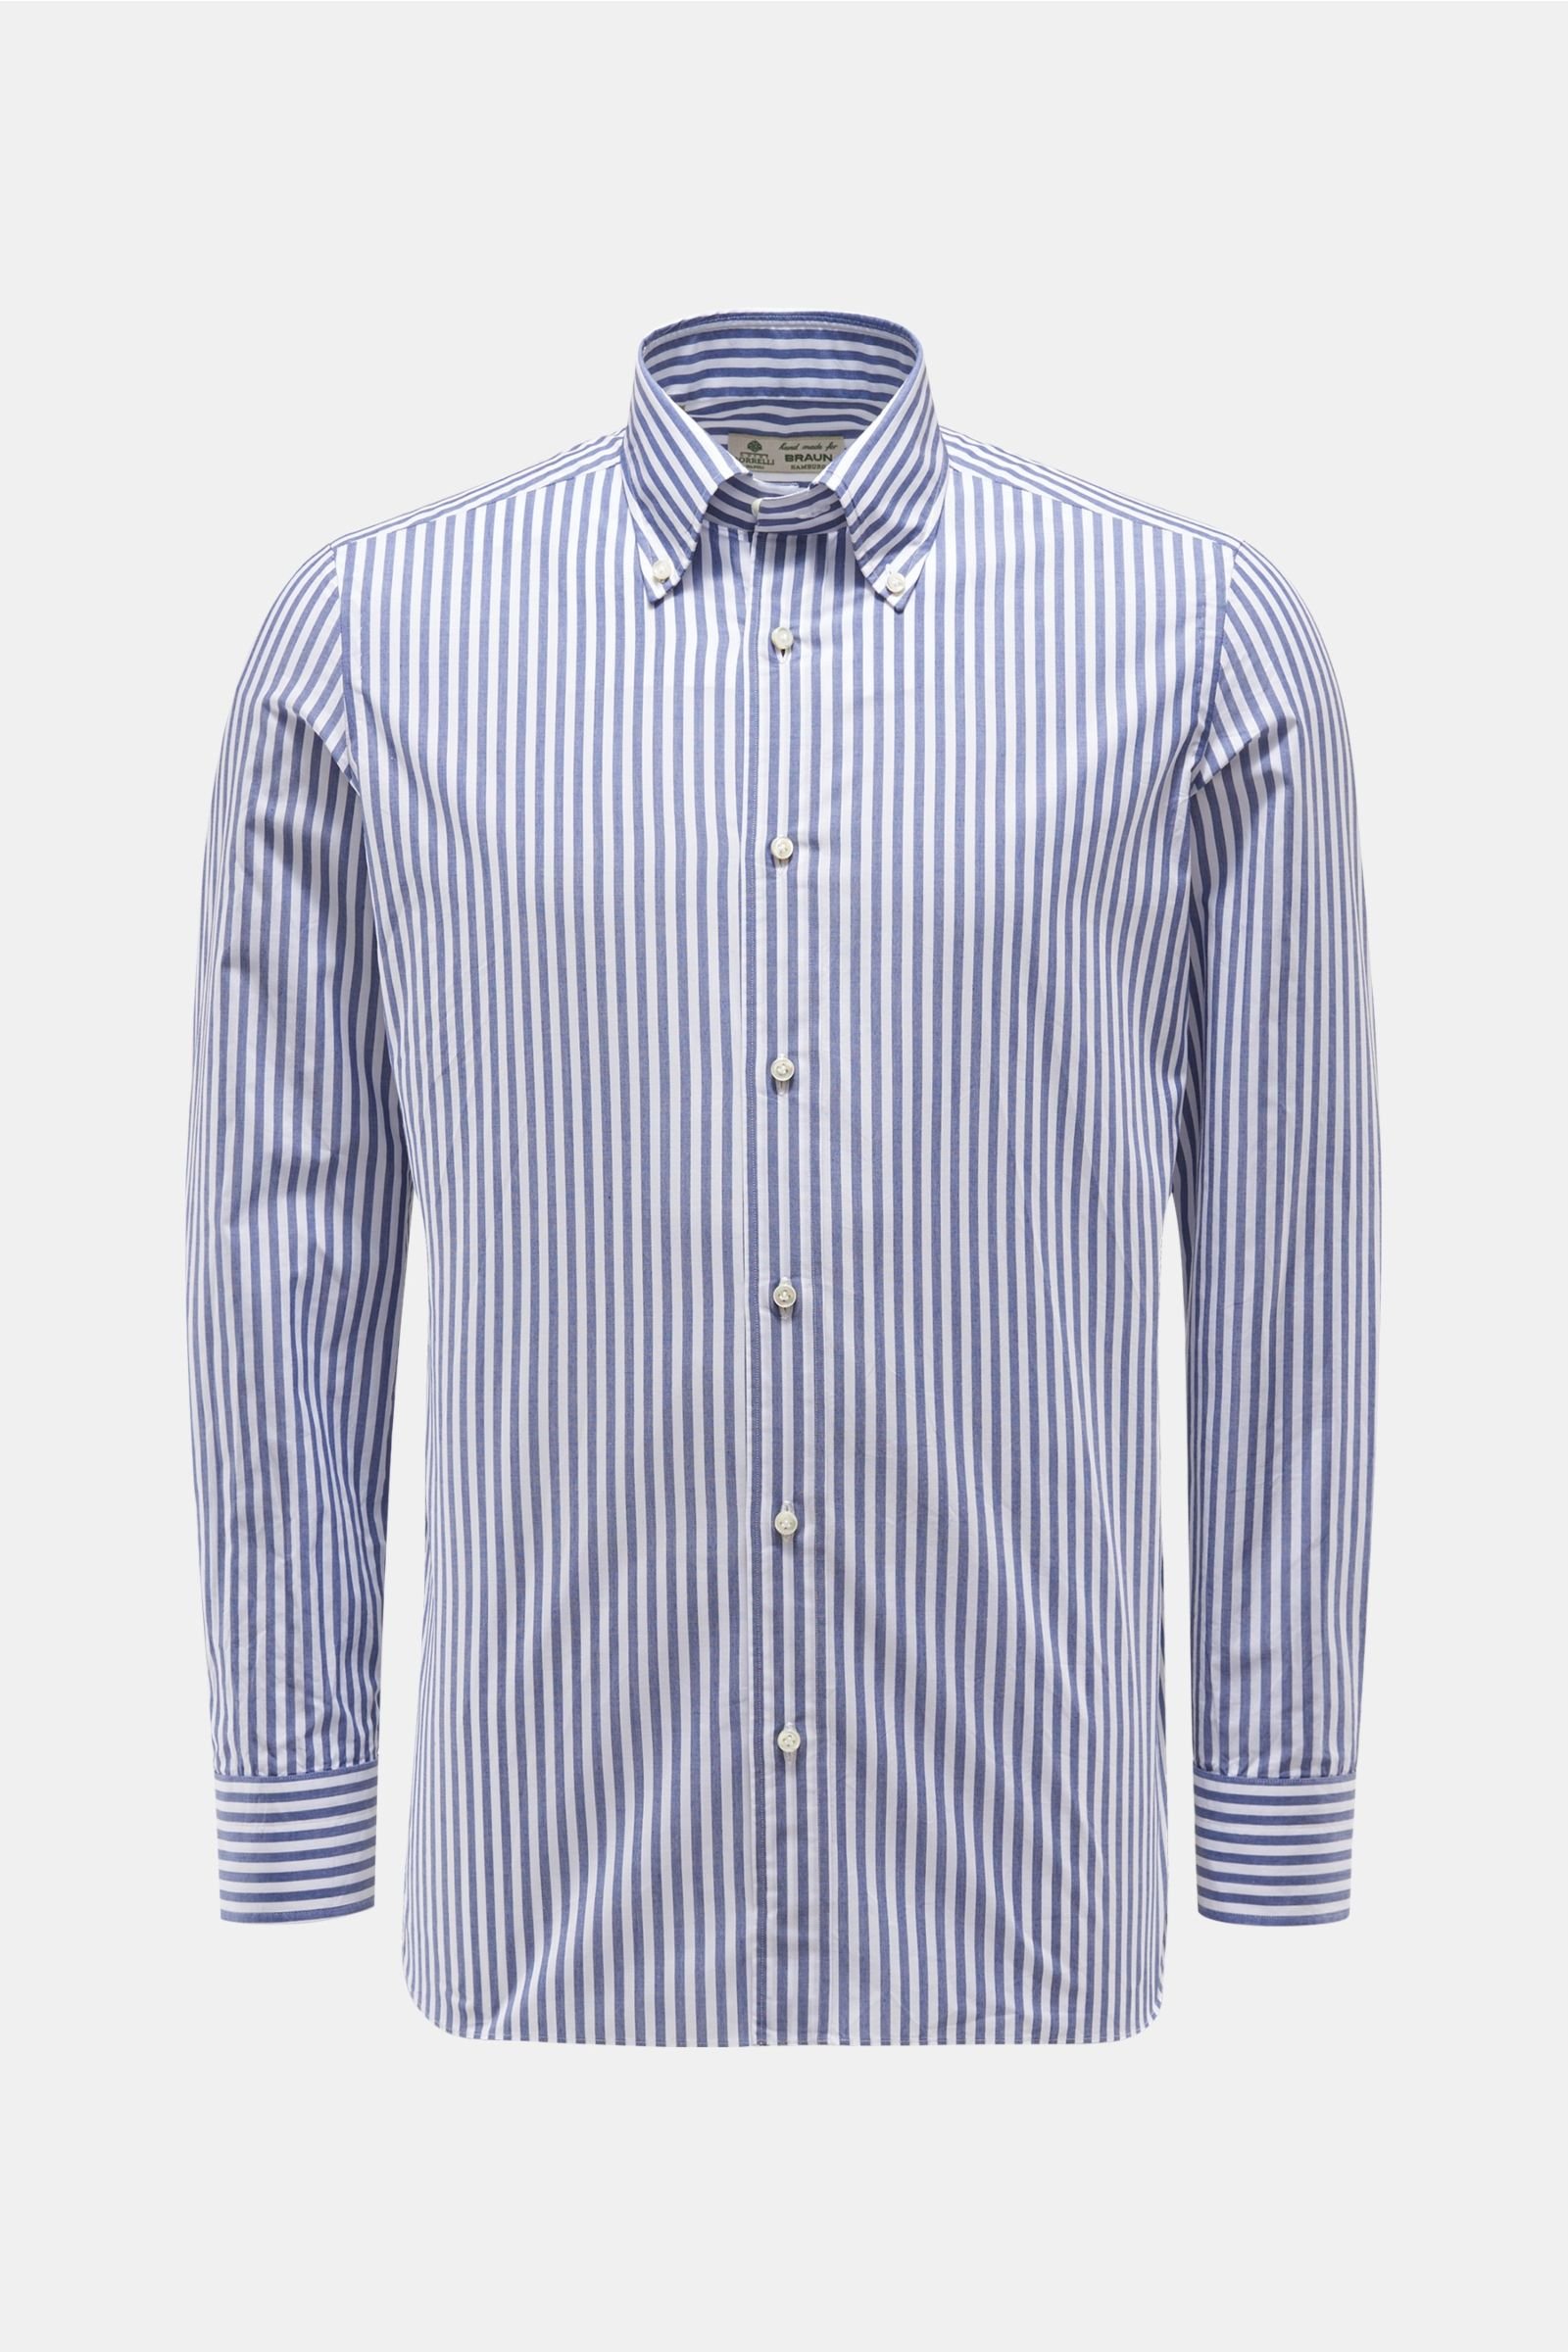 Casual Hemd Button-Down-Kragen graublau/weiß gestreift